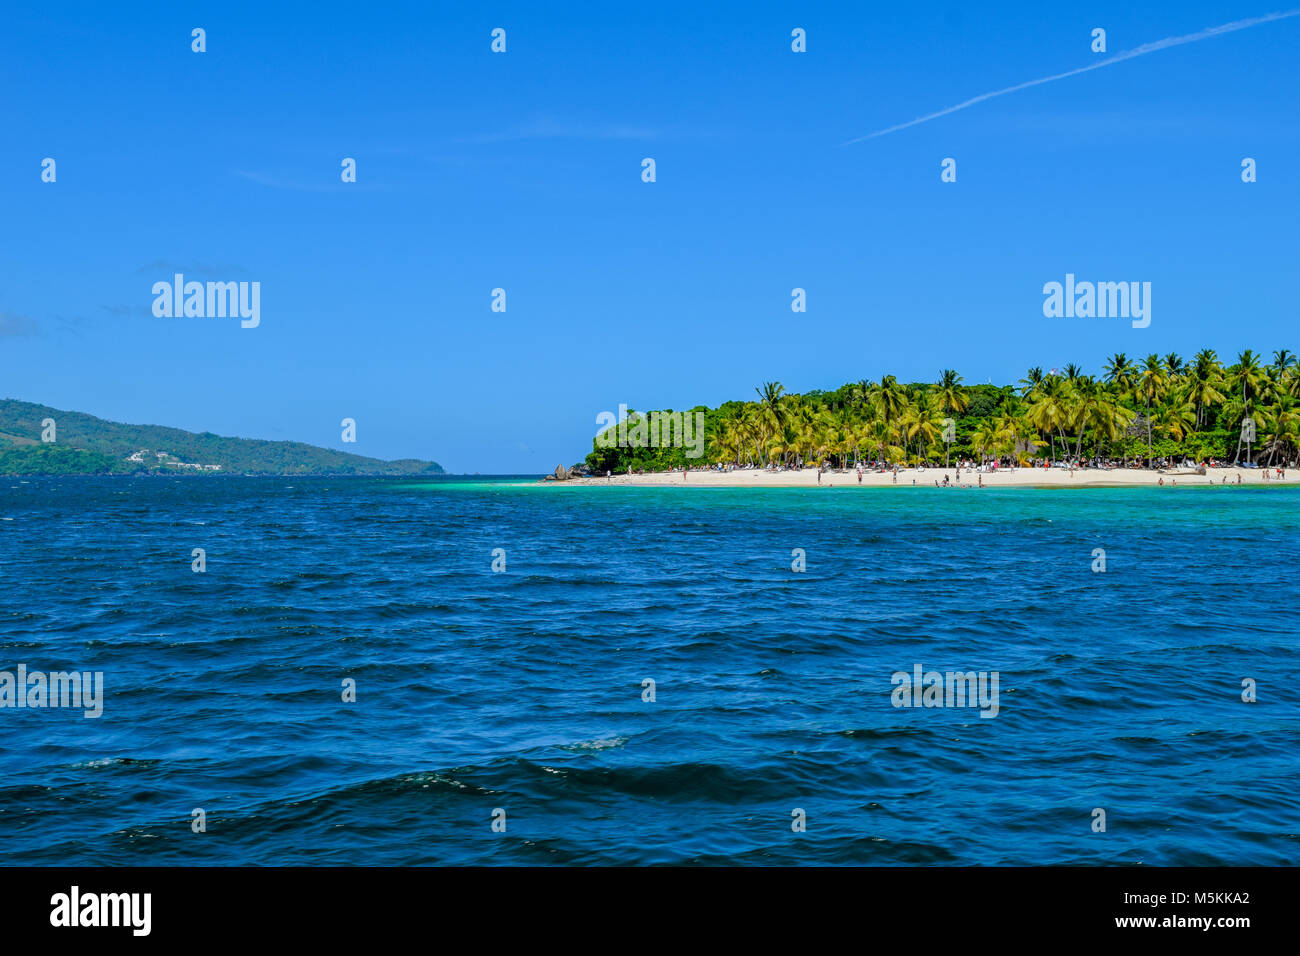 Belle plage avec des palmiers ciel bleu et l'eau turquoise, certains touristes s'amuser, se détendre et nager dans l'océan, la mer des Caraïbes Banque D'Images